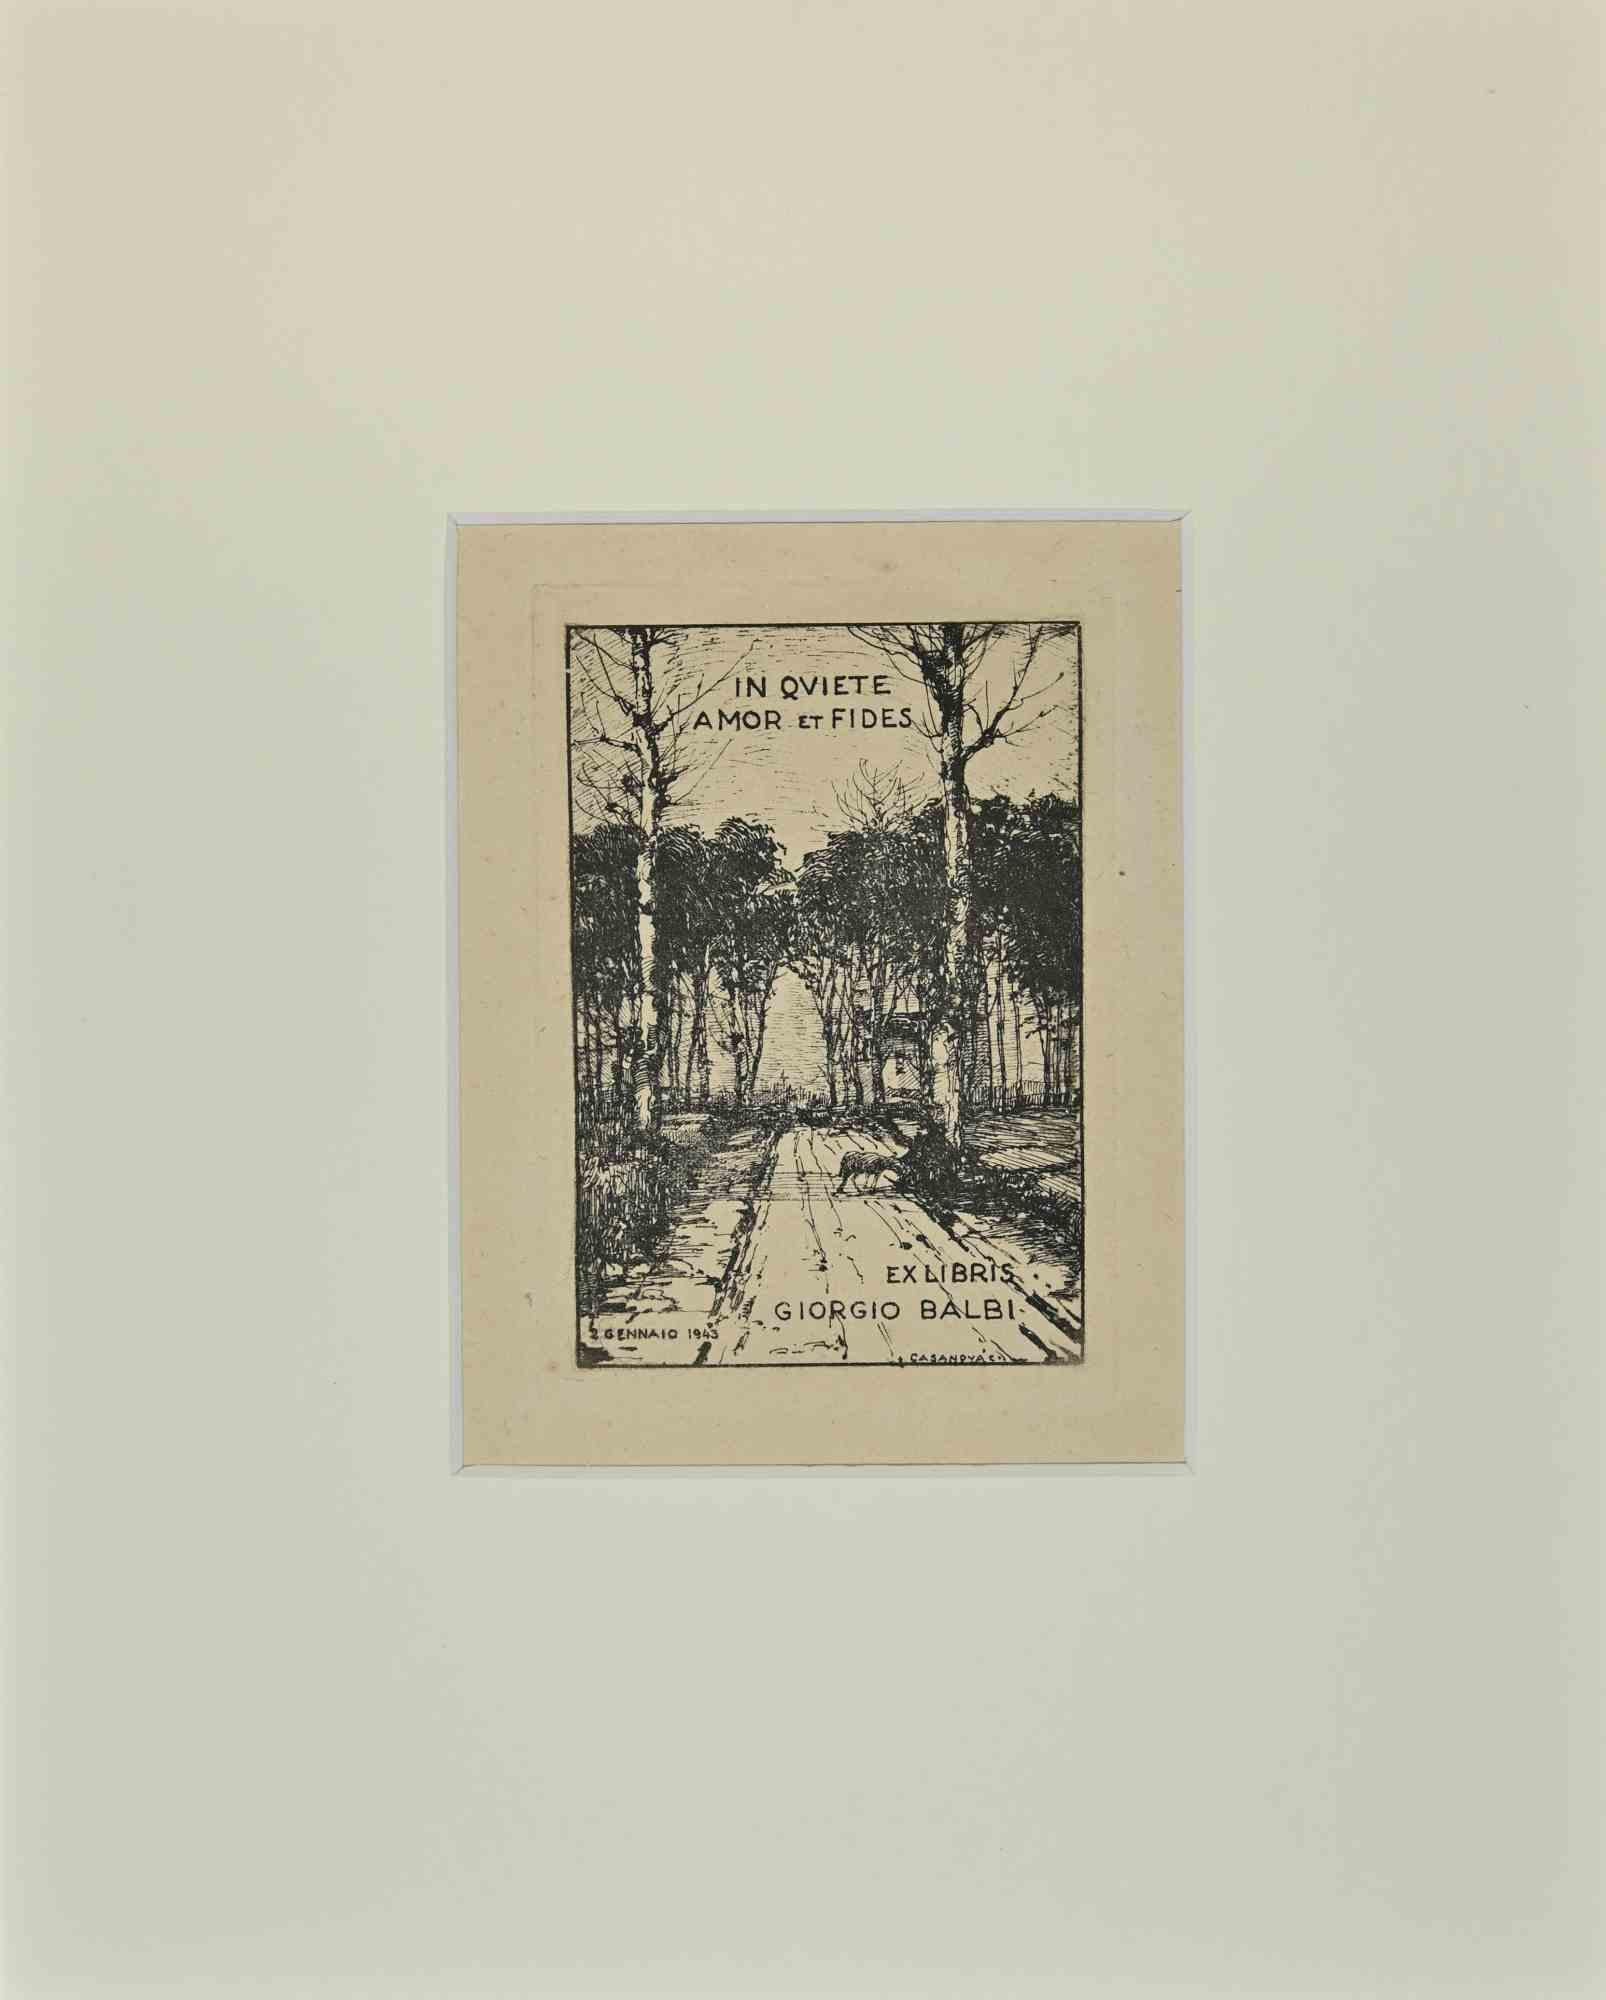 Ex Libris Giorgio Balbi - Etching - 1943